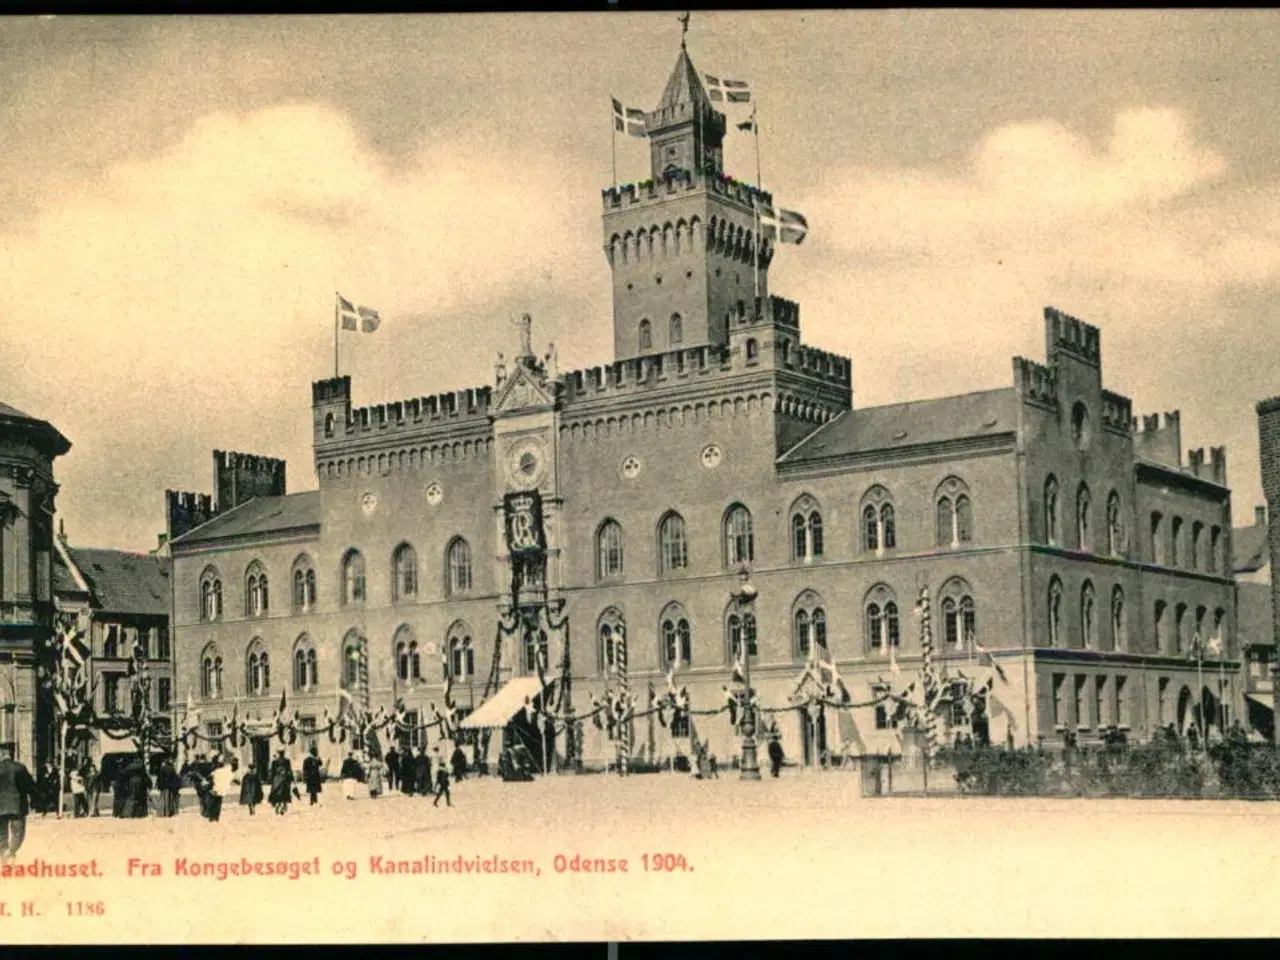 Billede 1 - Raadhuset  - Fra Kongebesøget og Kanalindvielsen, Odense 1904 - H.H.O. 1186